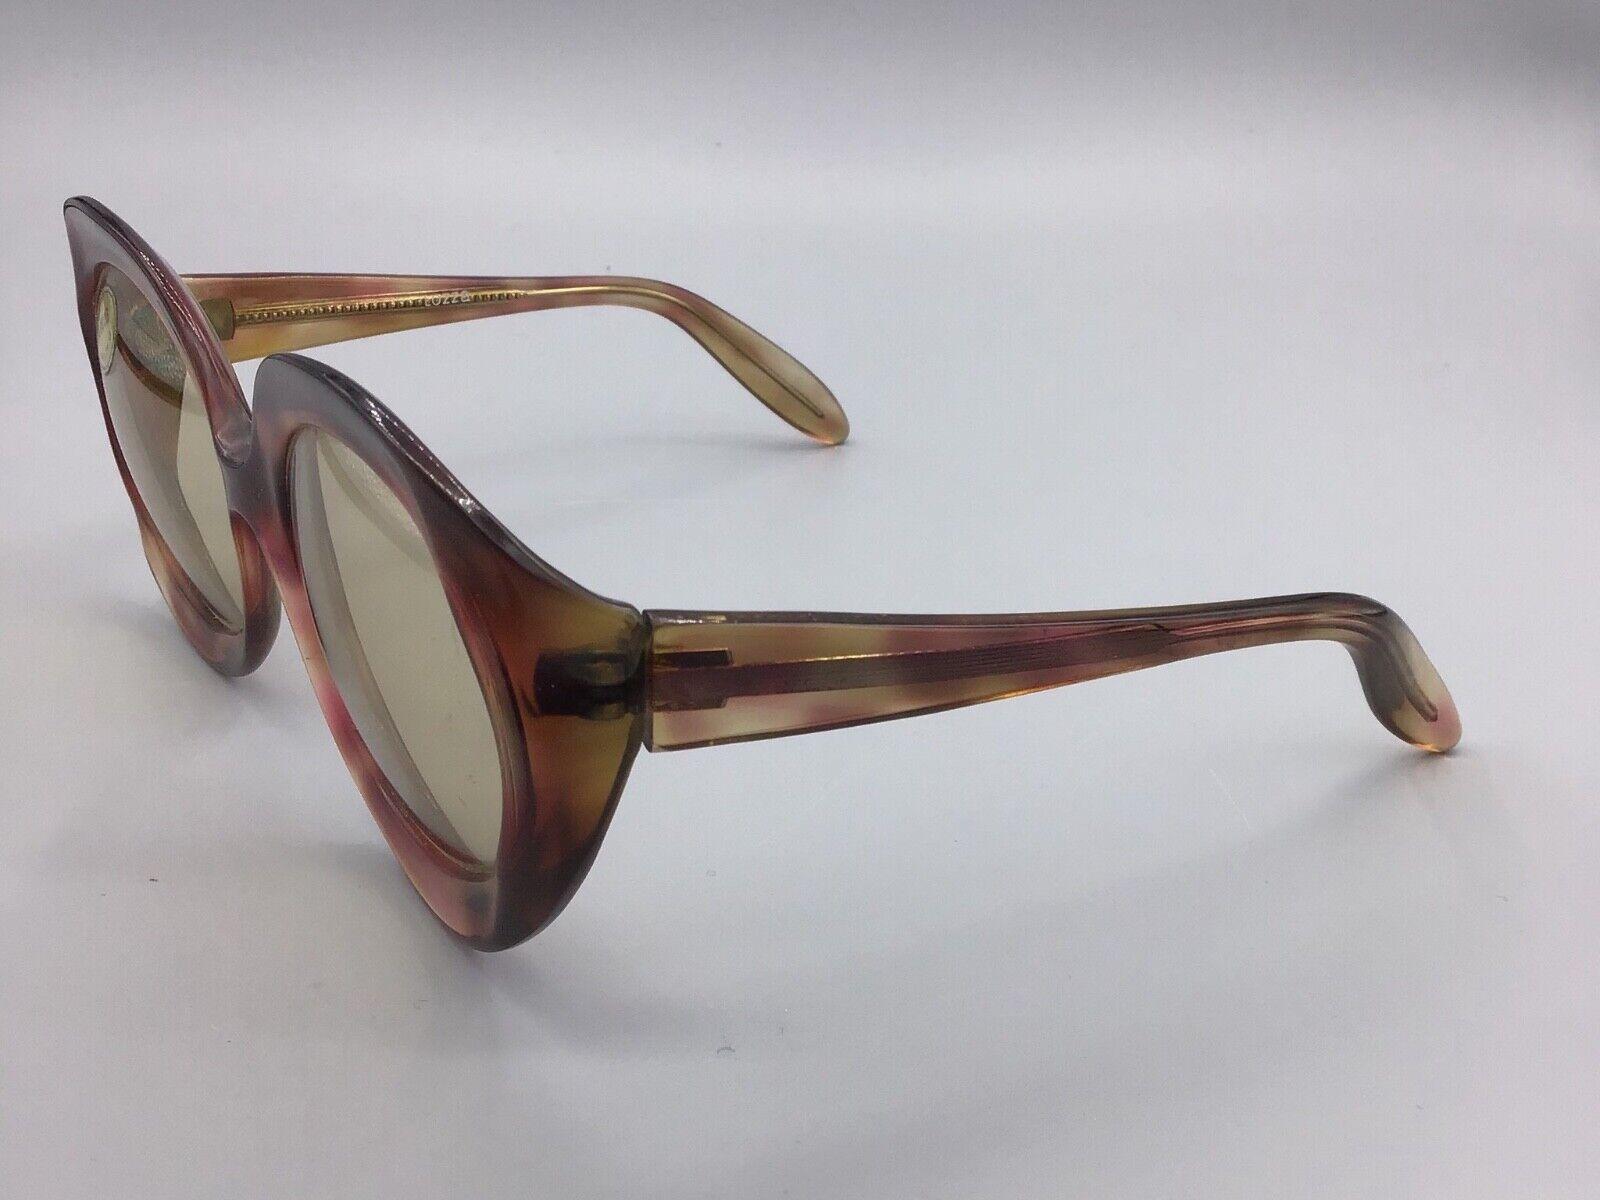 Lozza occhiale da sole Sunglasses model Perla sonnenbrillen lunettes gafas sol